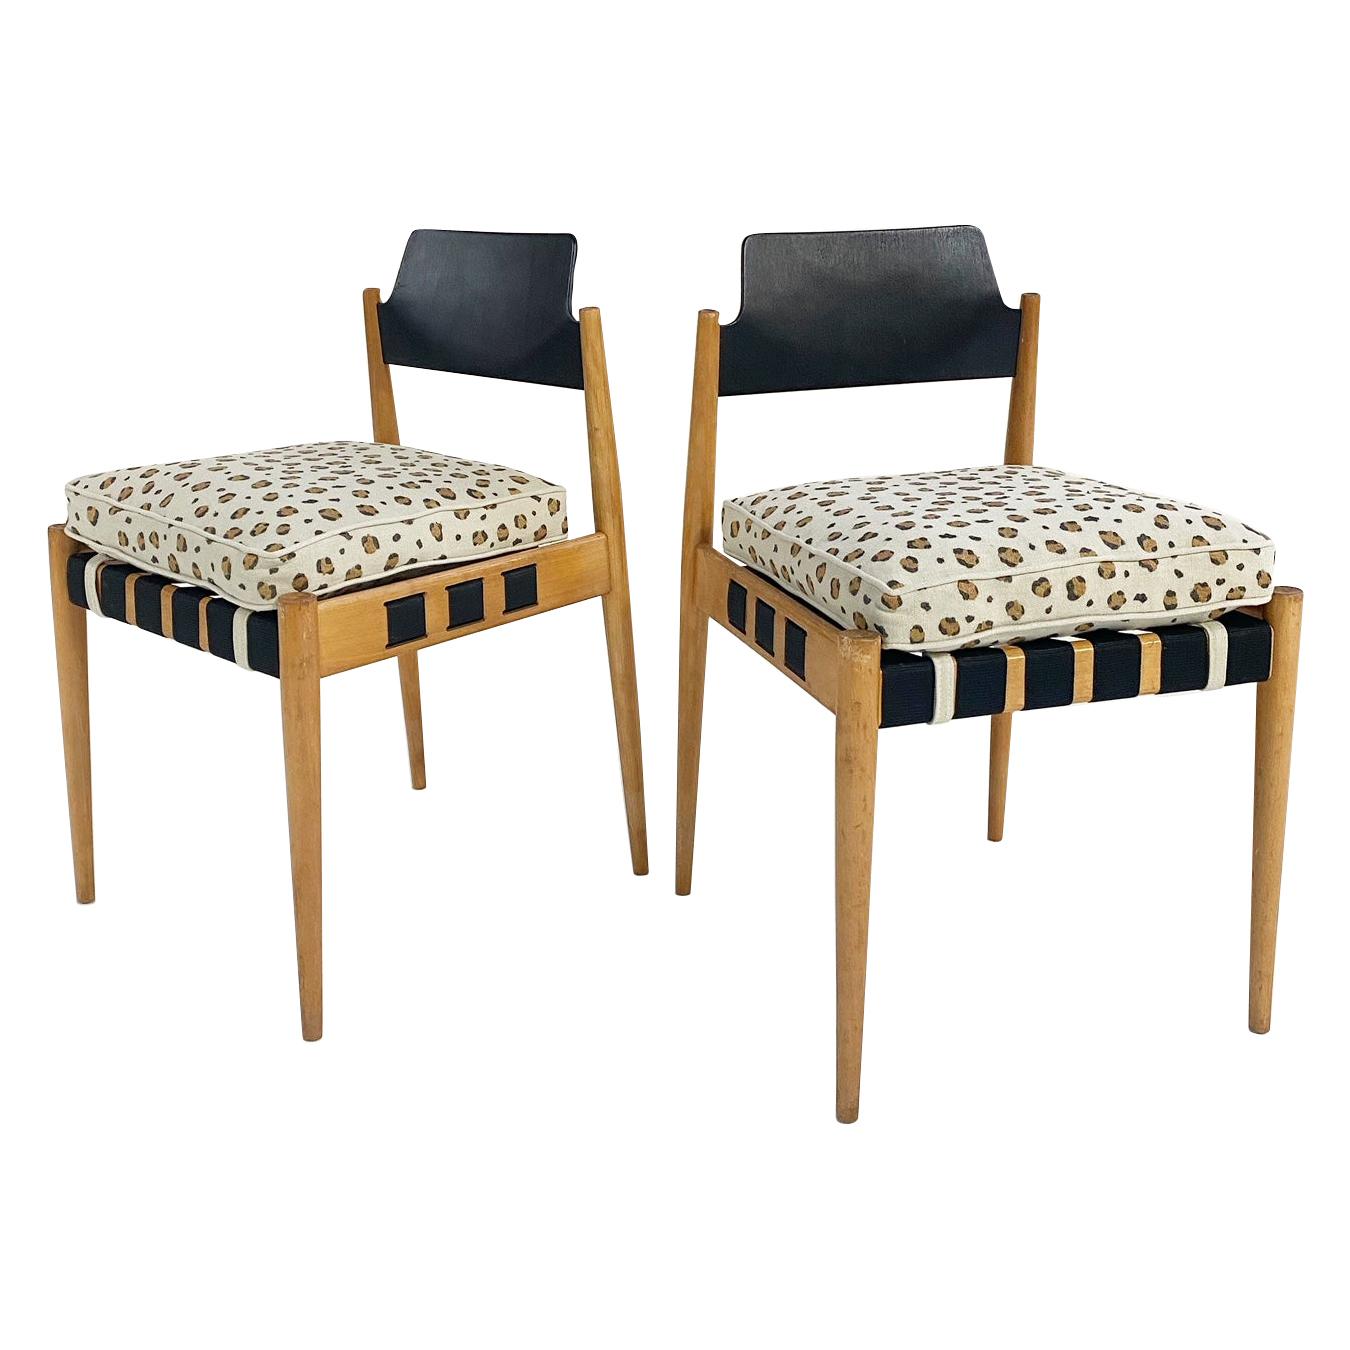 Egon Eiermann SE 120 Chairs with Custom Cushions in Chelsea Textiles, Pair